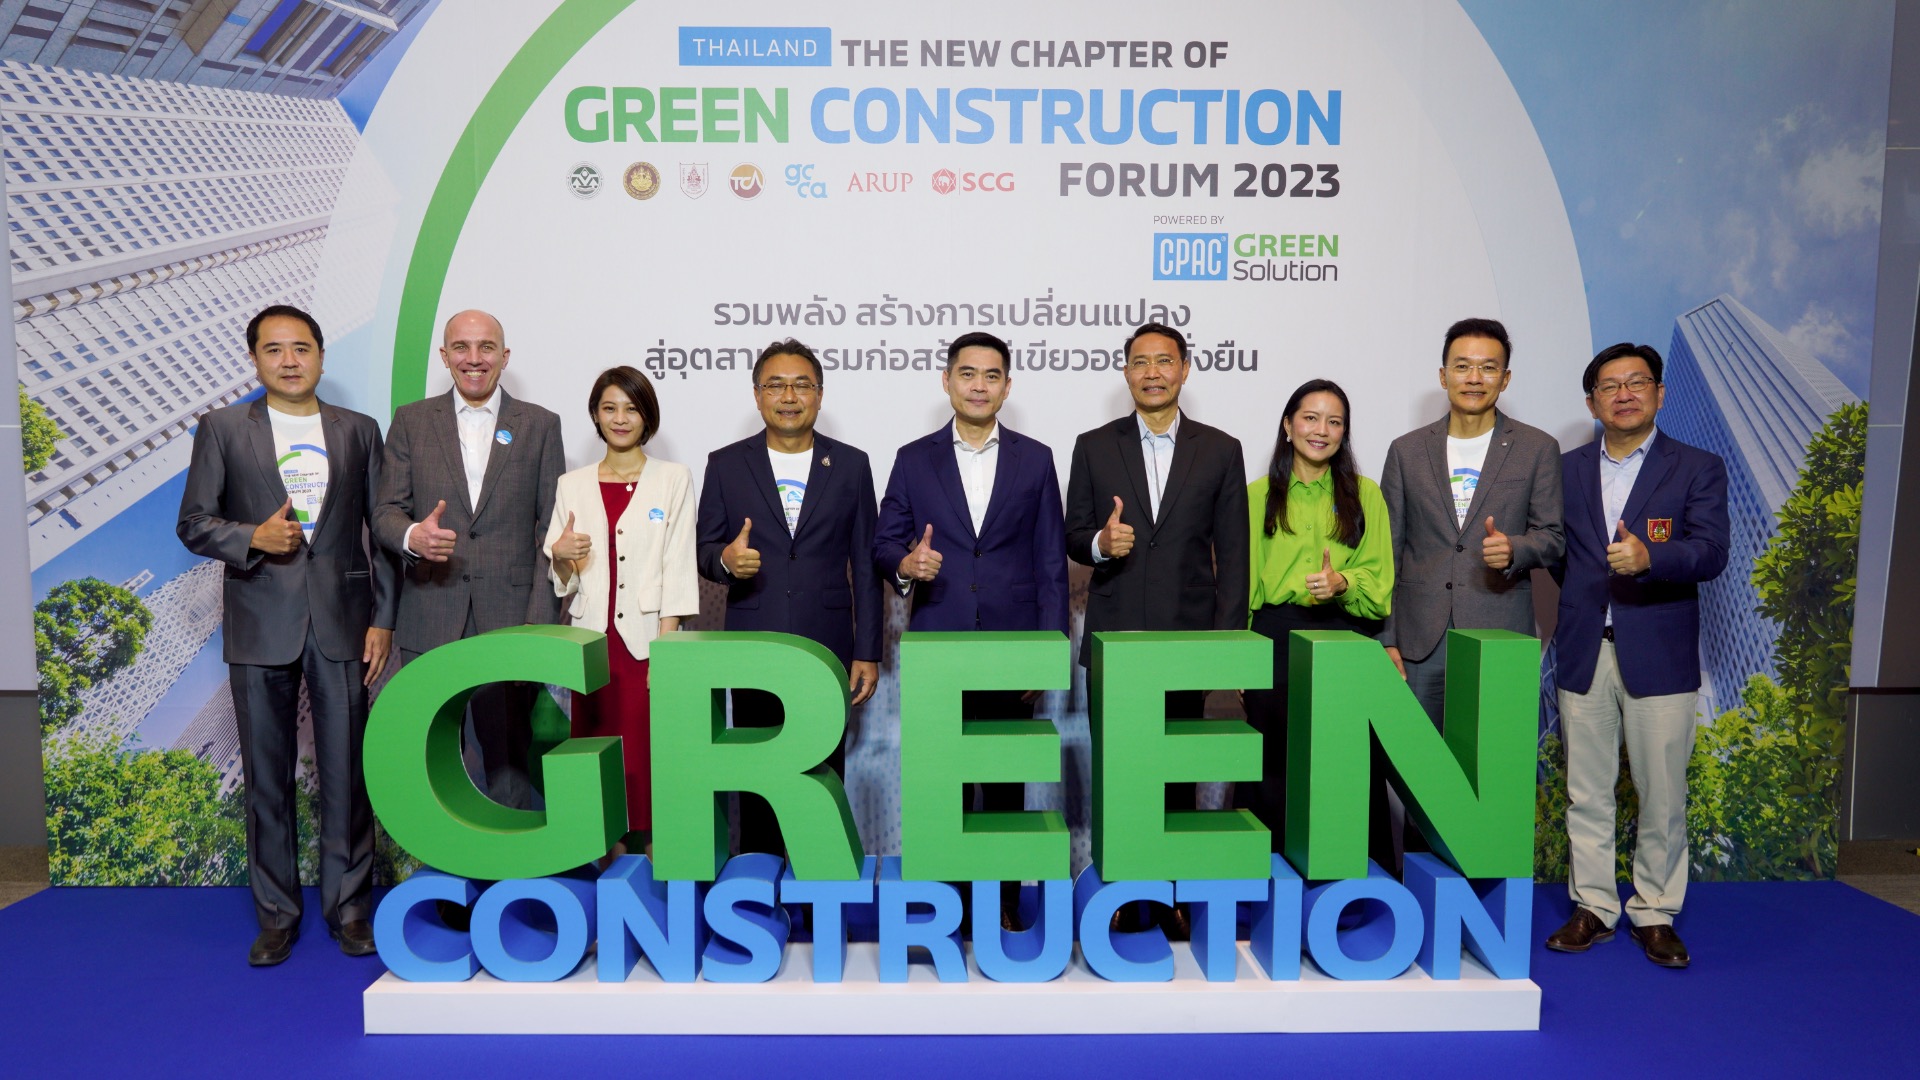 Green Construction by CPAC Green Solution เรื่องราวบทใหม่ของการก่อสร้างแบบลดโลกร้อน!